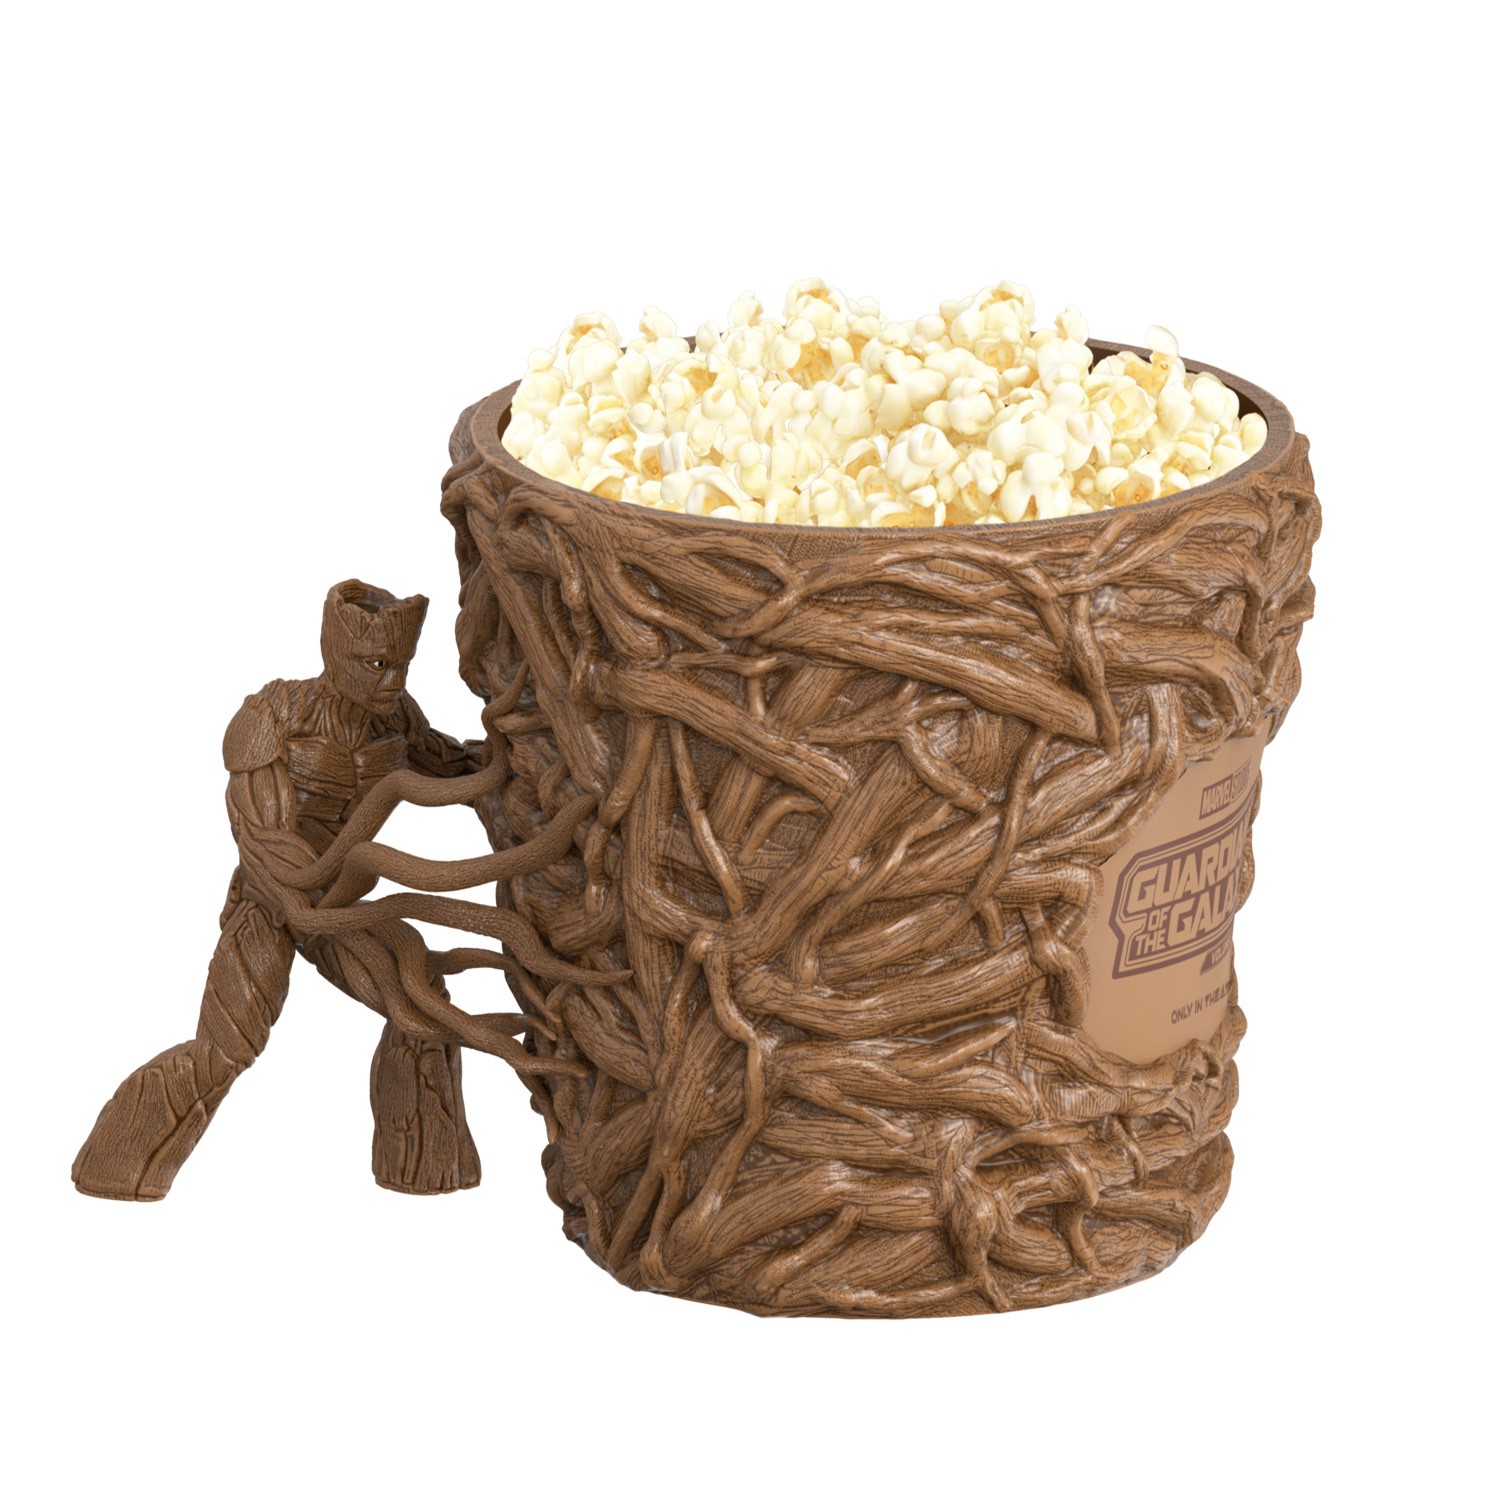 souvenir popcorn bucket